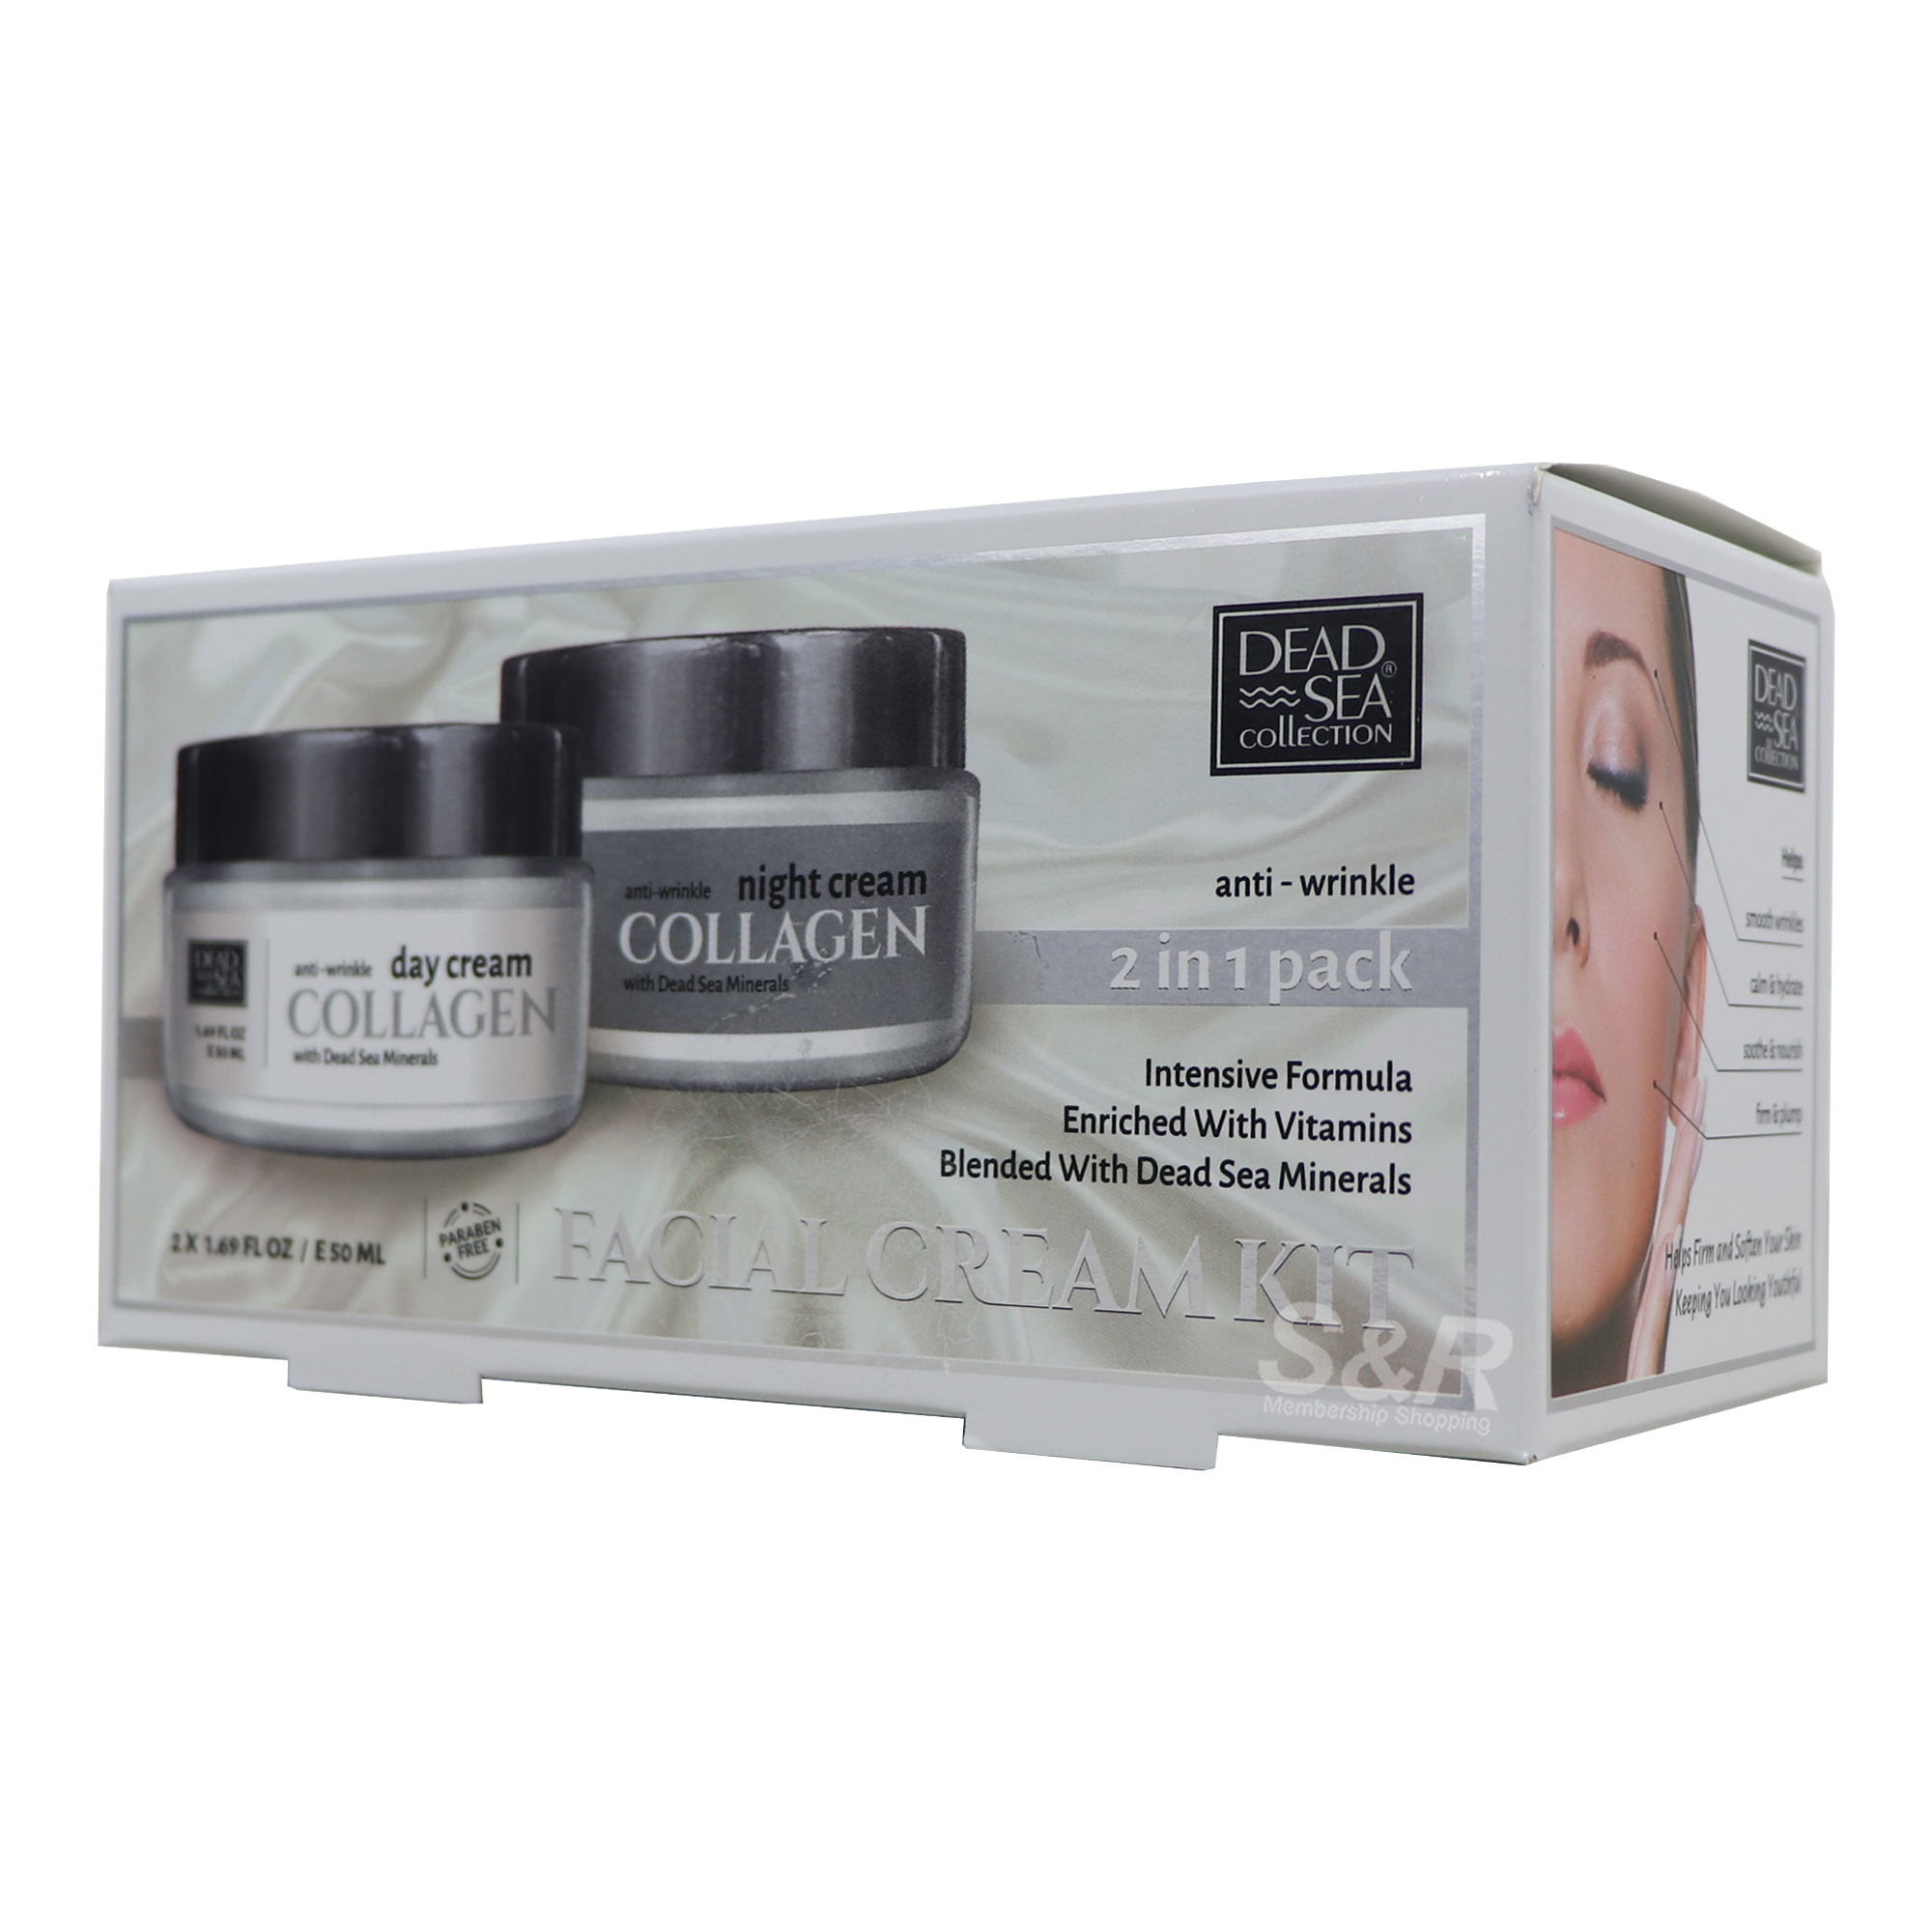 Dead Sea Collection Collagen Facial Cream Kit